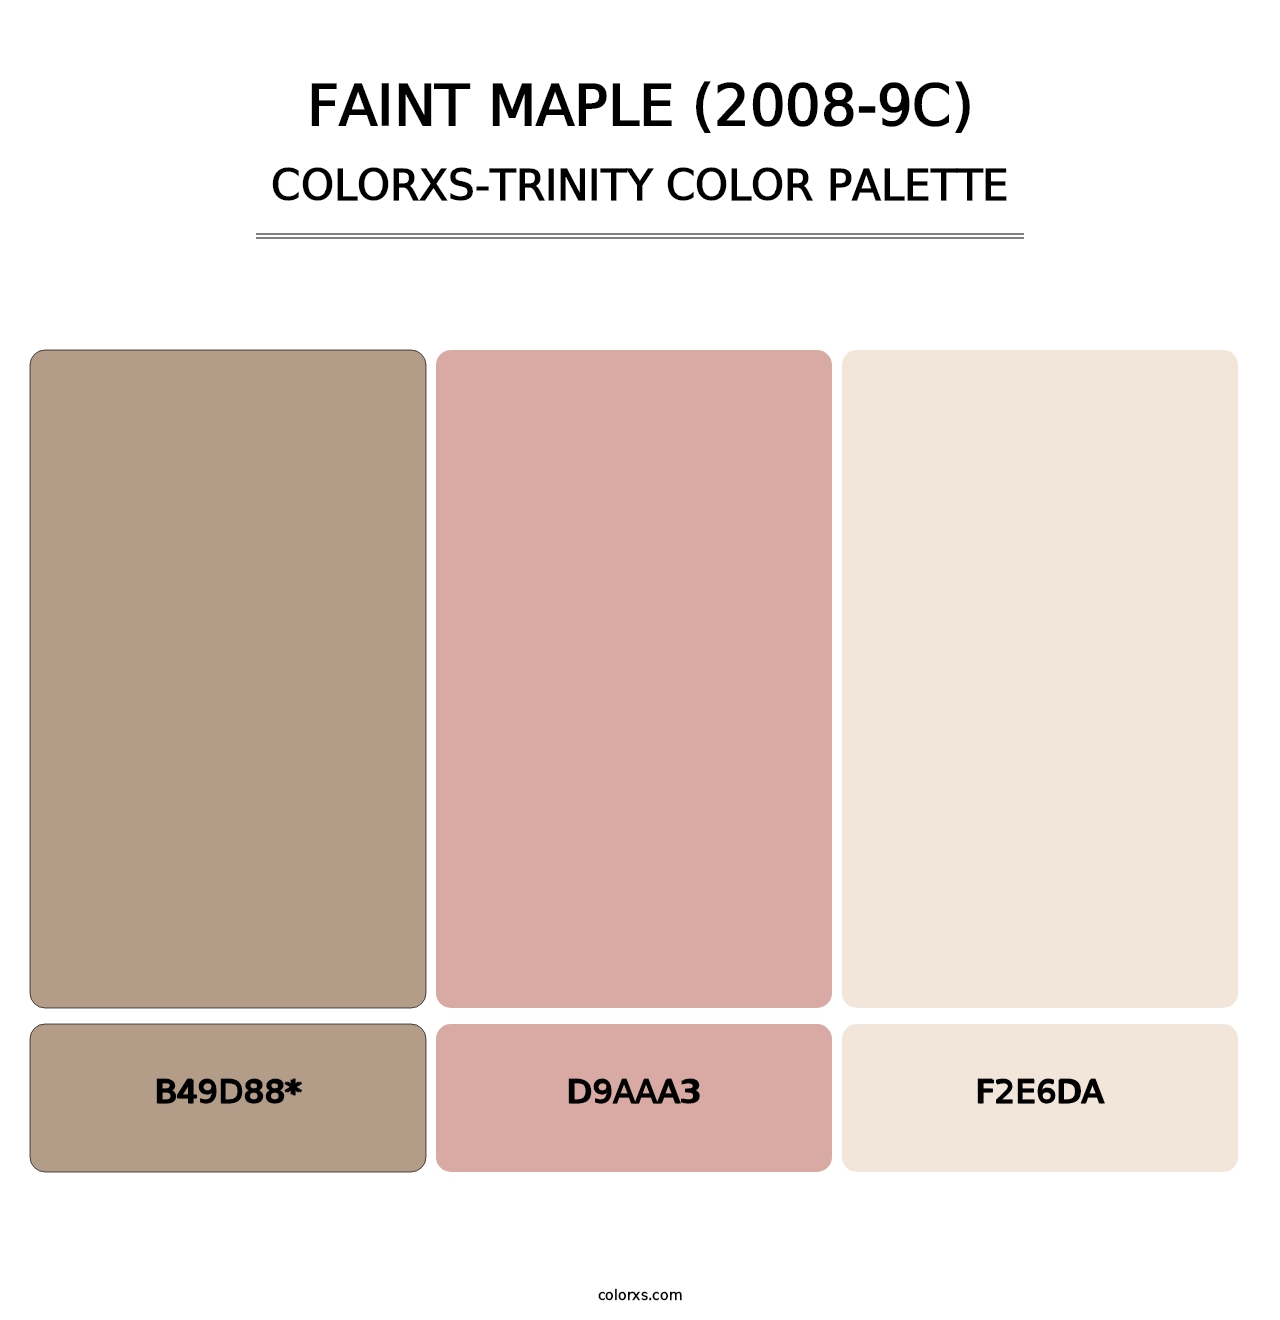 Faint Maple (2008-9C) - Colorxs Trinity Palette